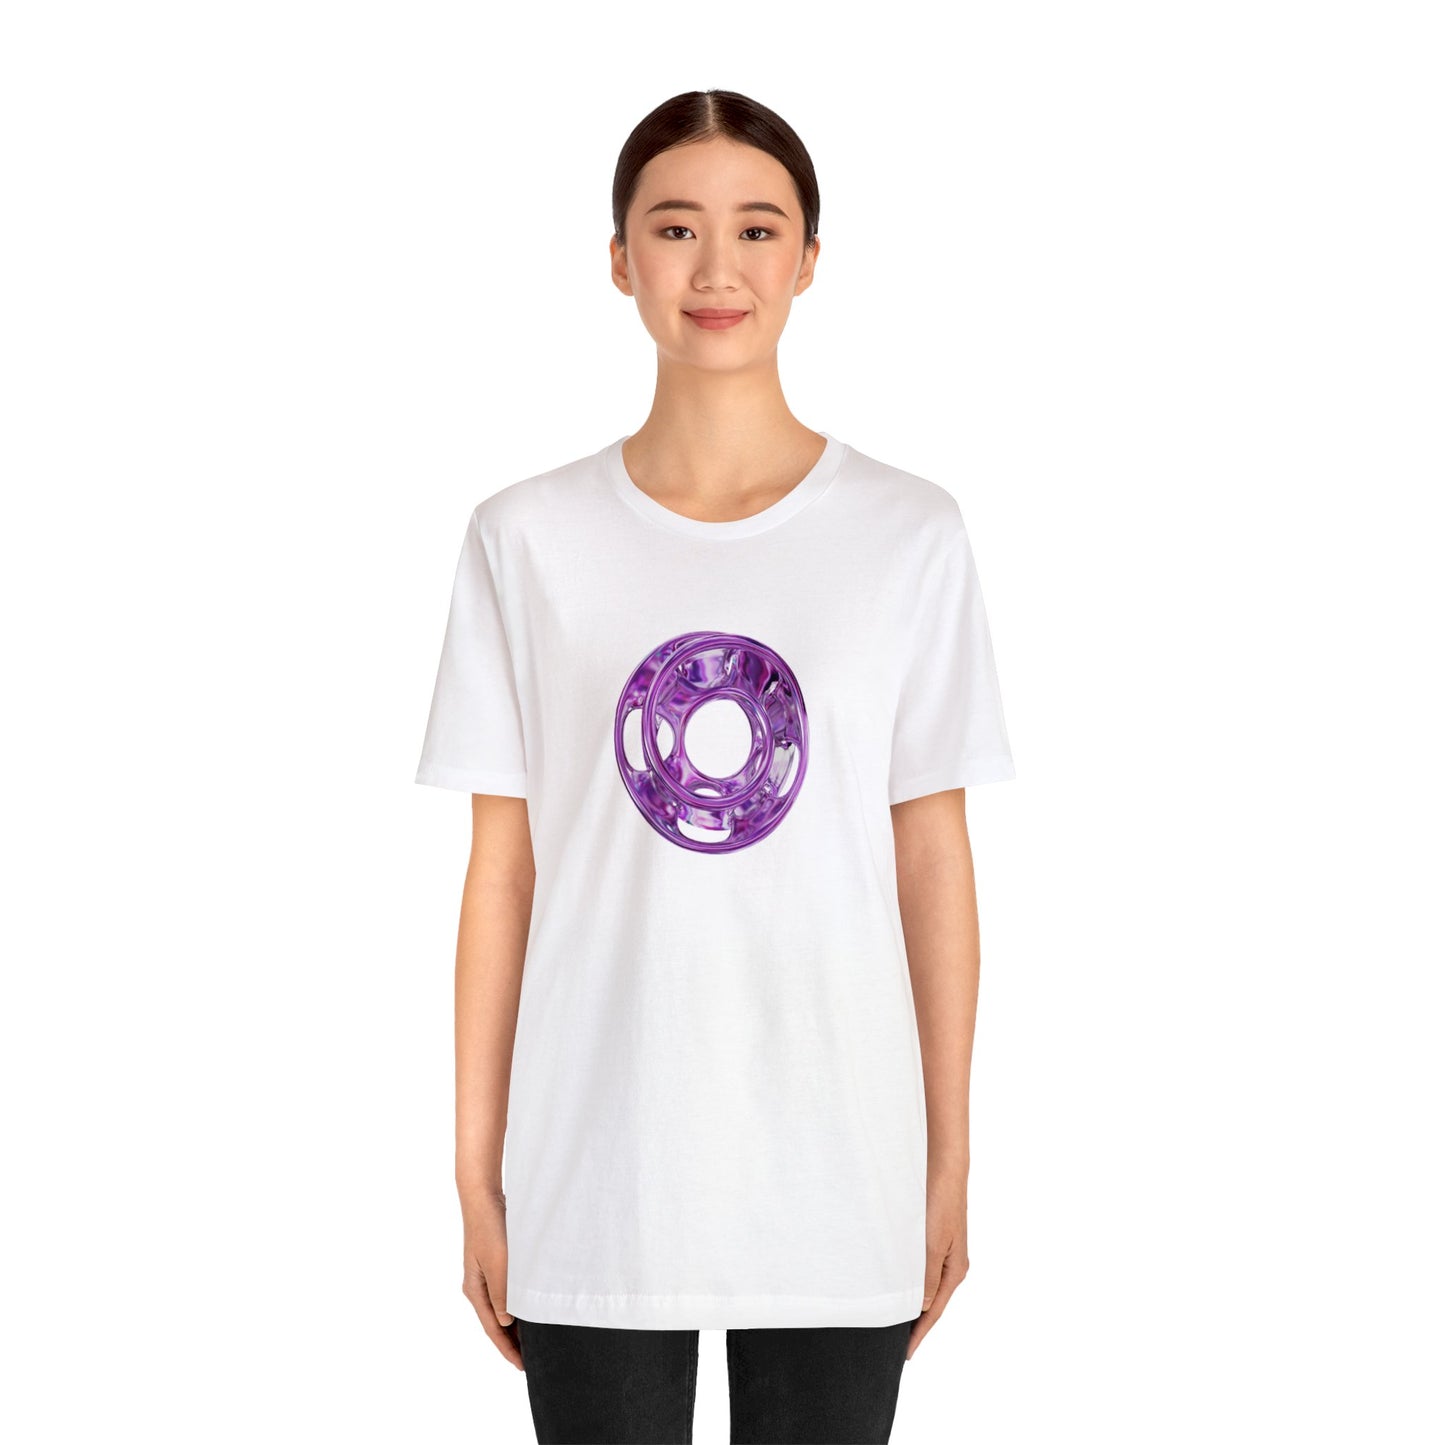 Delirium Round Unisex T-Shirt